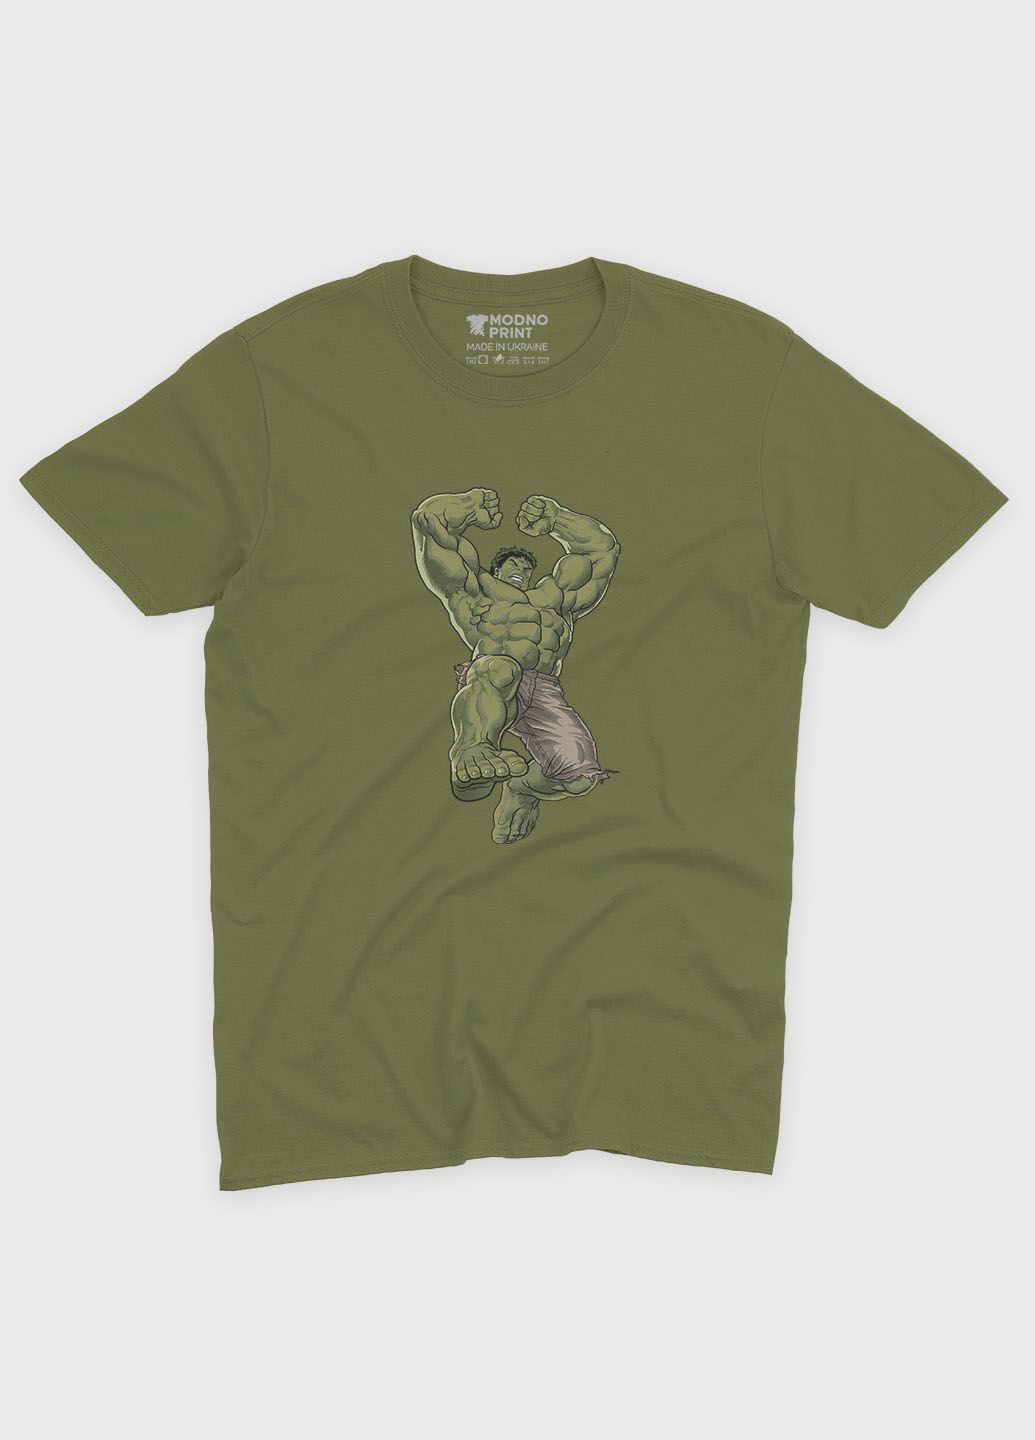 Хаки (оливковая) мужская футболка с принтом супергероя - халк (ts001-1-hgr-006-018-011) Modno